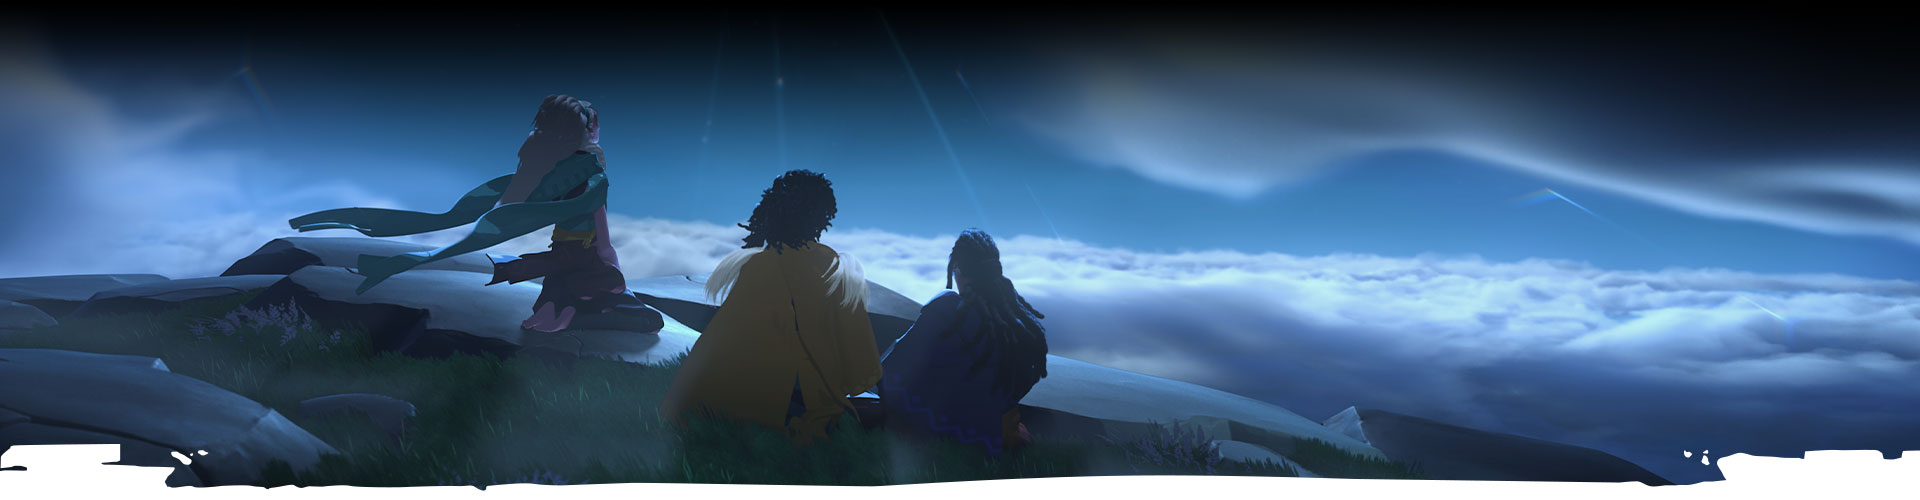 Tři postavy se dívají na noční oblohu. 